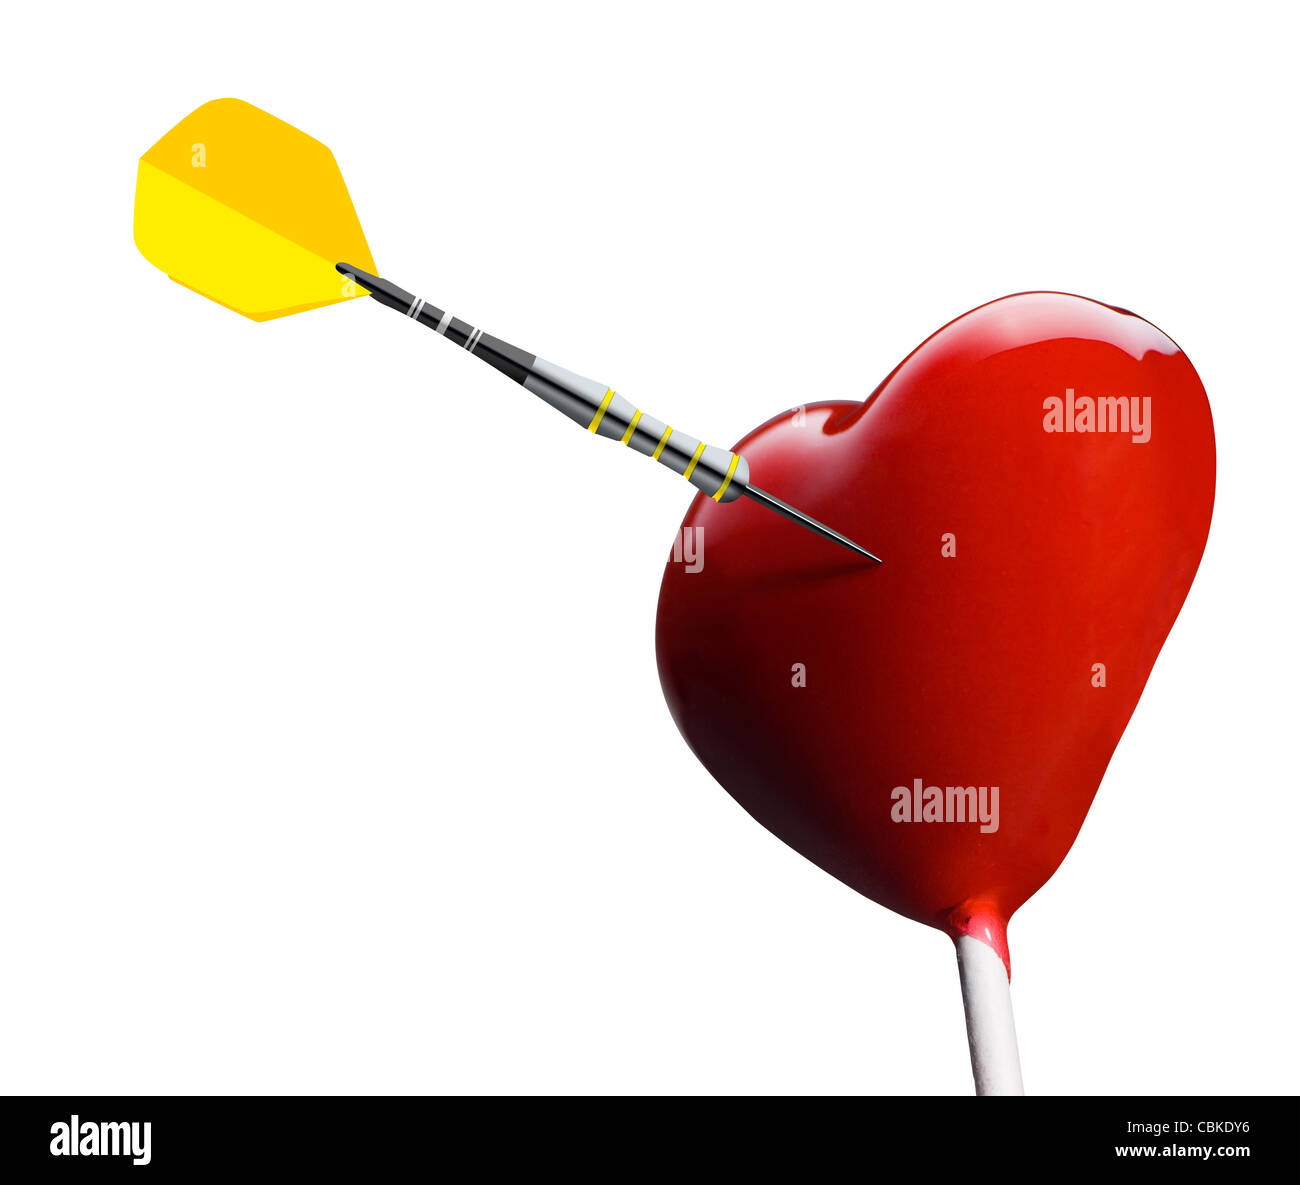 Sucette en forme de coeur touché par une flèche Heart-shaped lollipop hit by an arrow Stock Photo